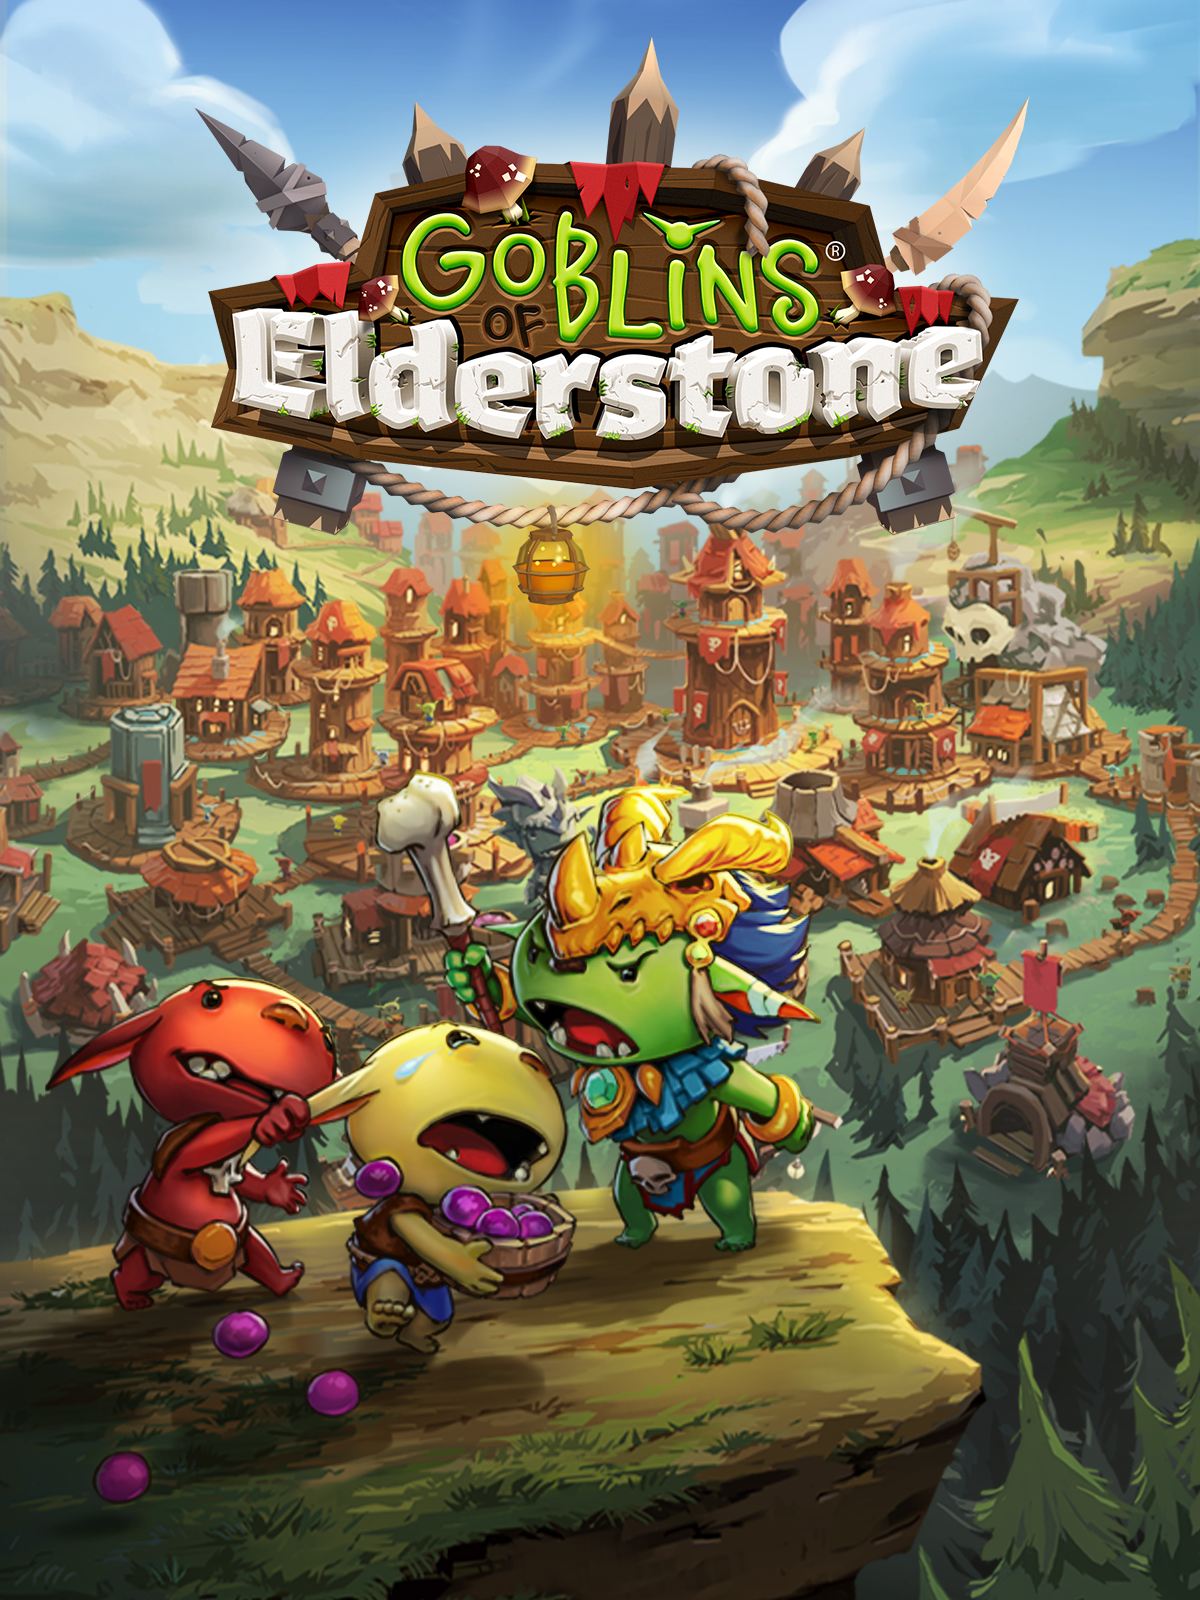 Goblins of Elderstone